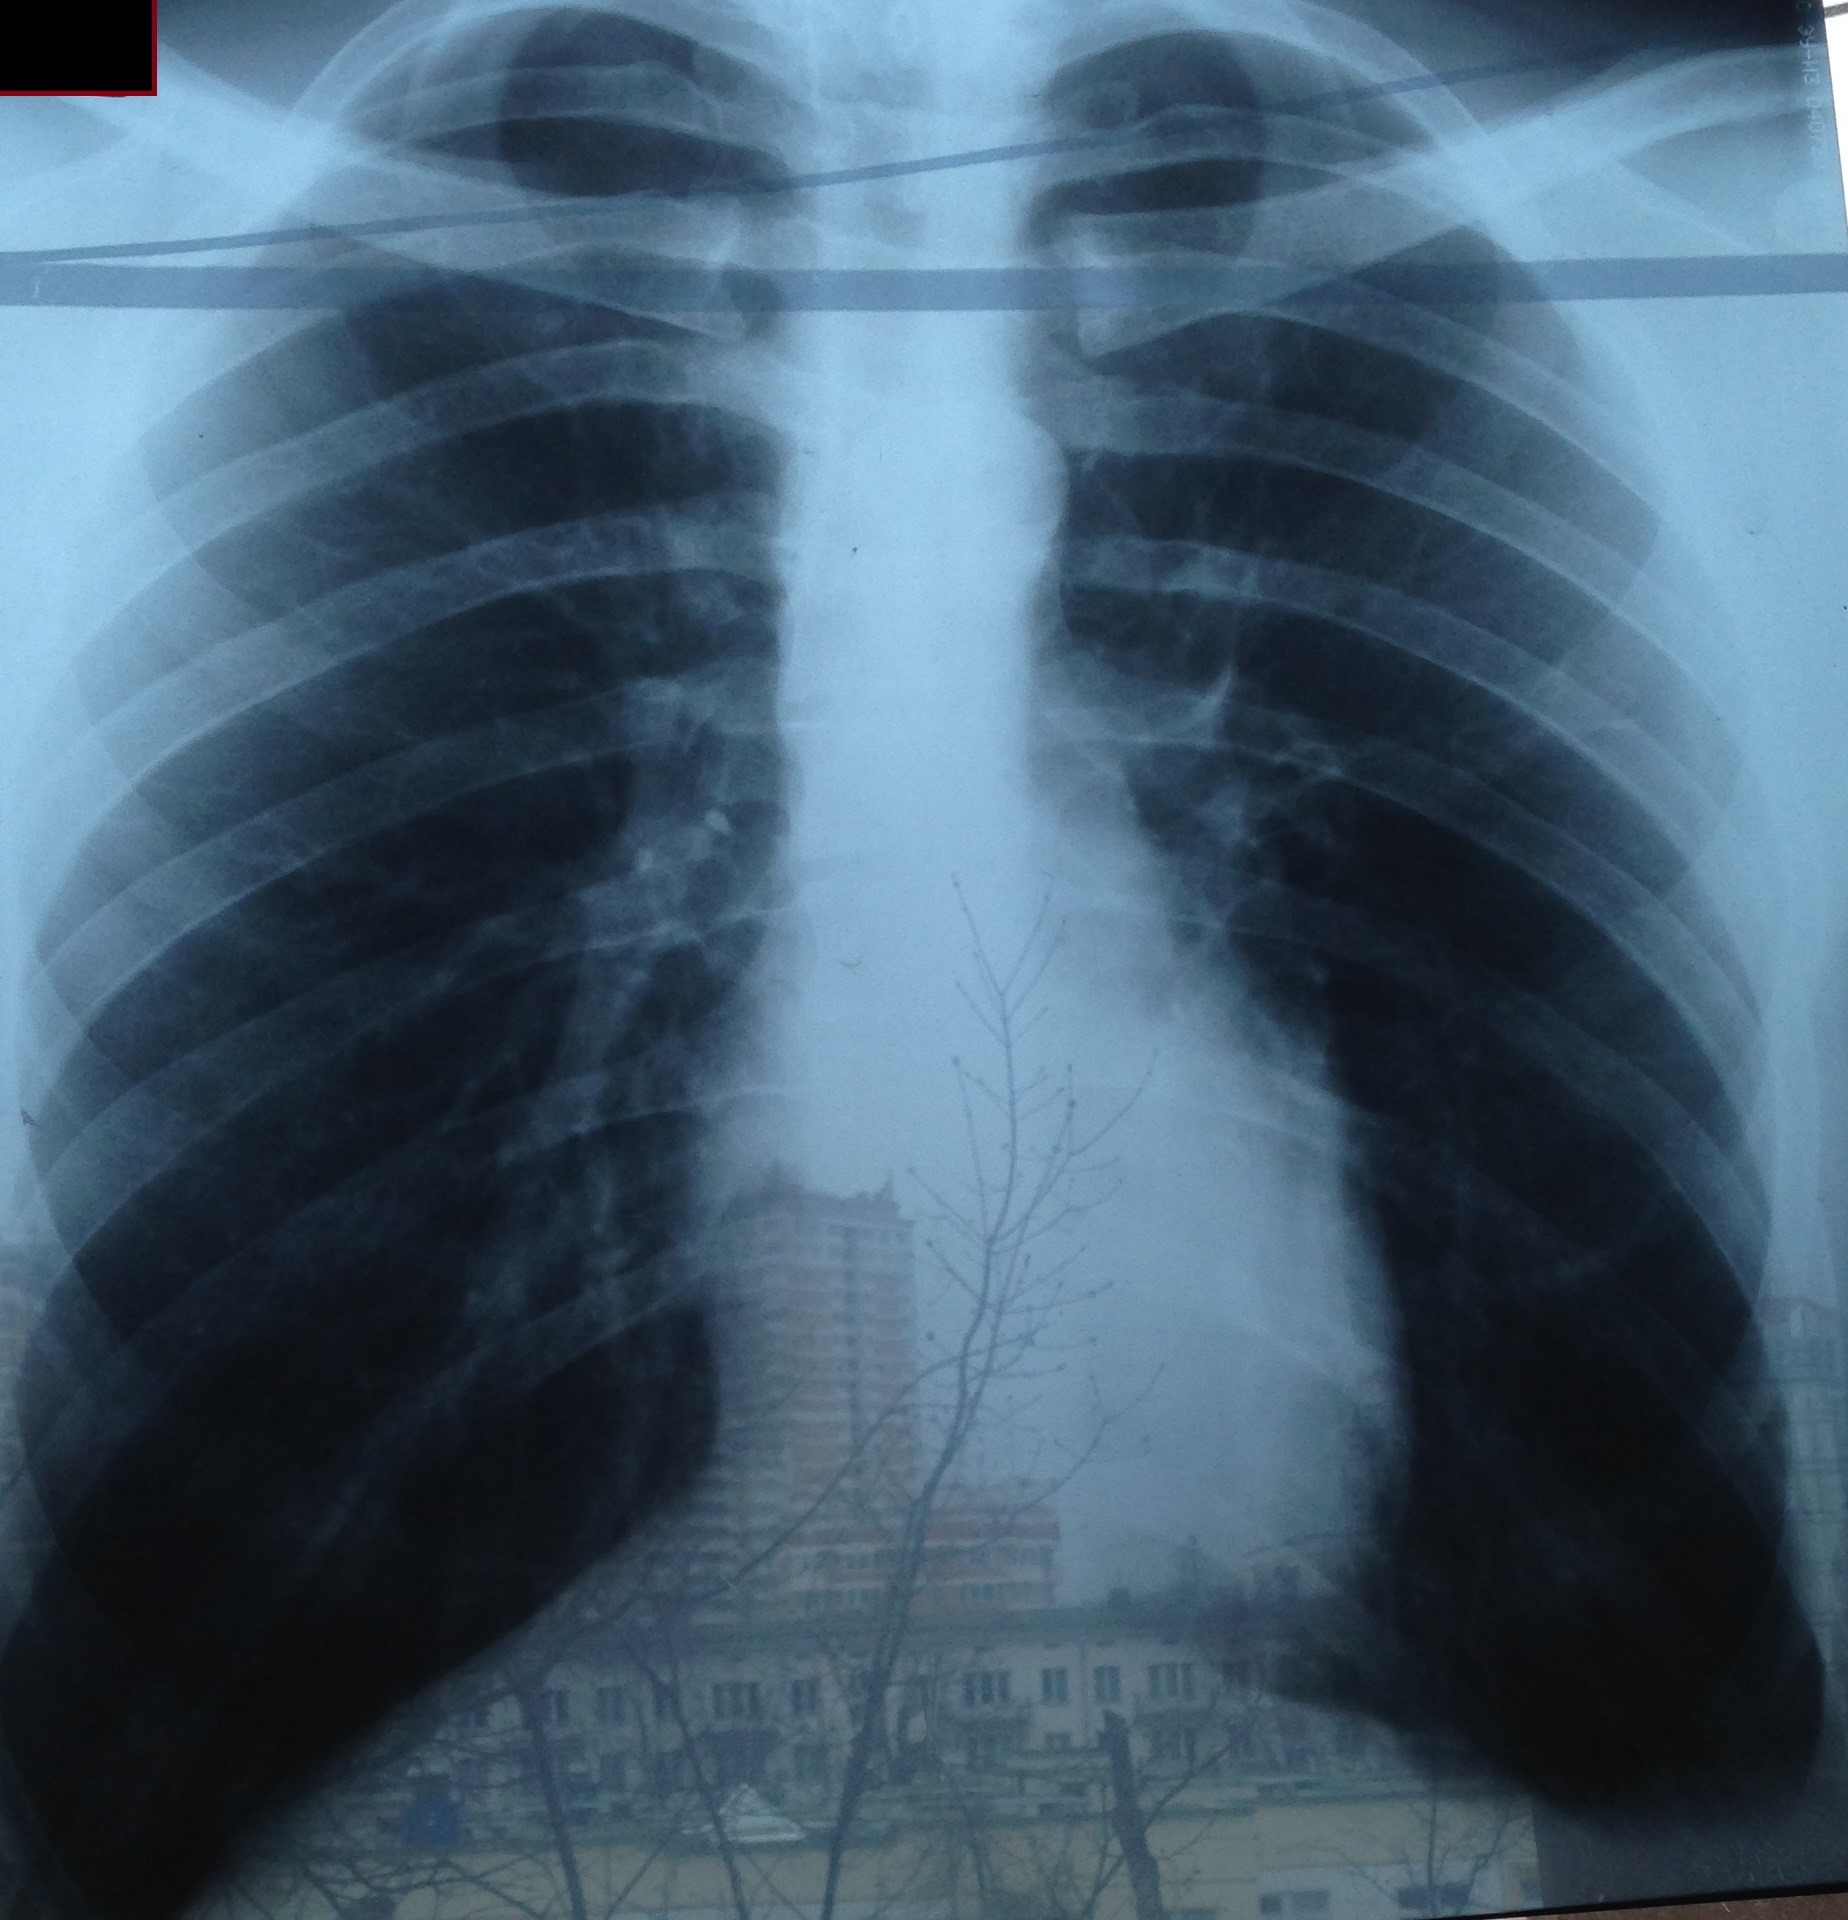 Рентген легких с пневмонией фото у детей